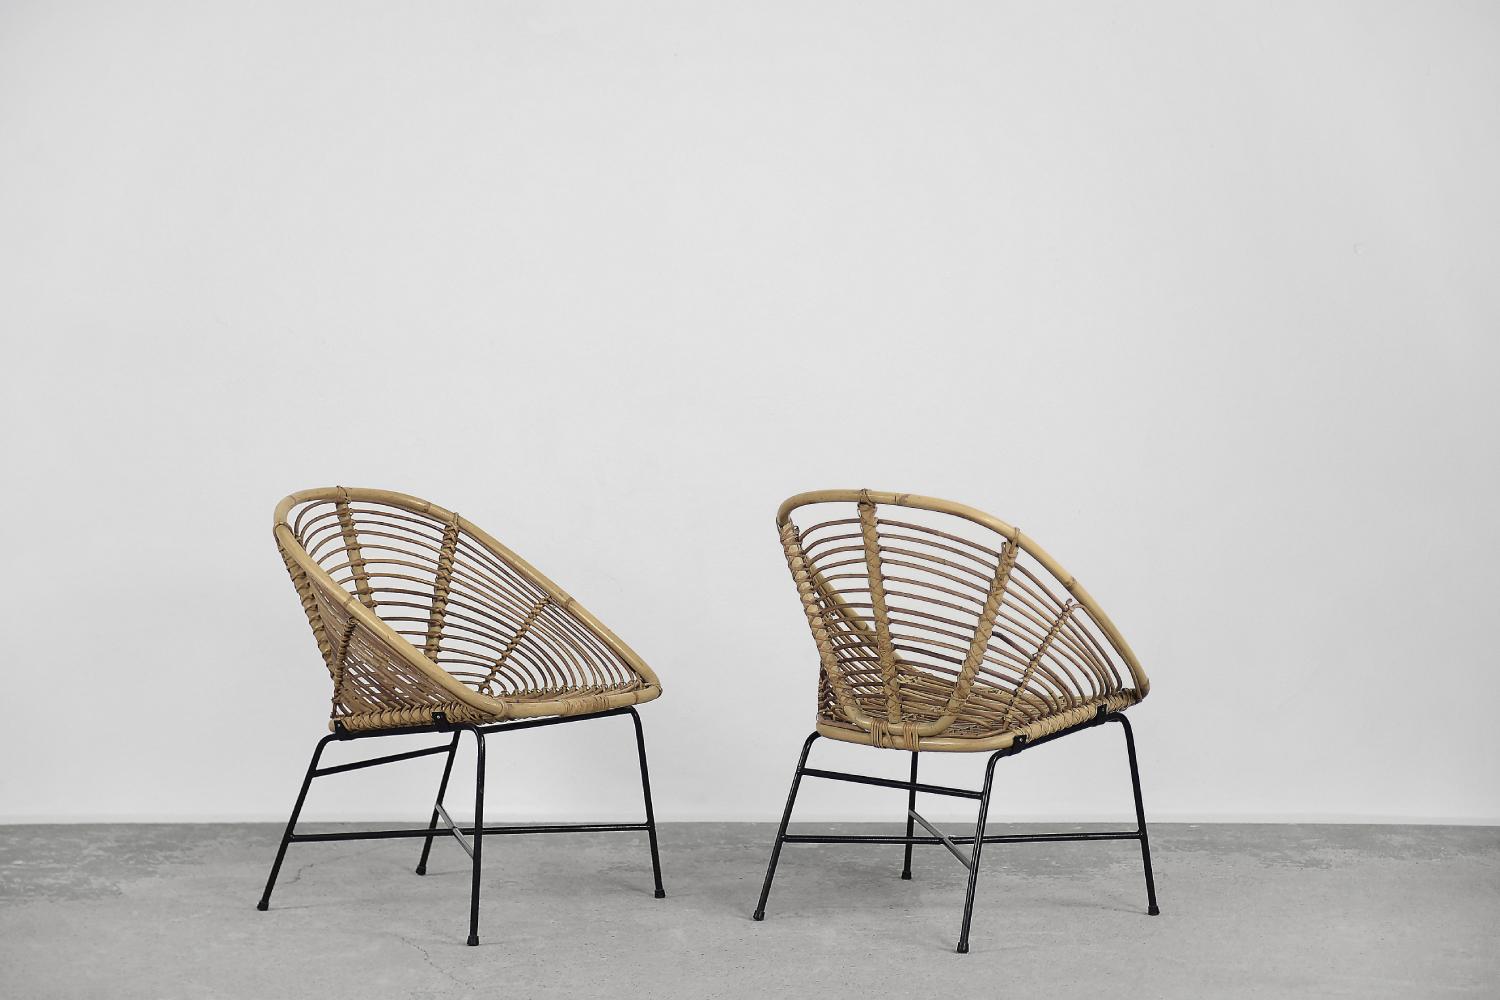 Cet ensemble de deux fauteuils vintage a été produit dans les années 1960. Le cadre était en métal noir, et le siège en forme de seau était tissé en bambou naturel.

Les fauteuils sont dans un état original vintage. Ils présentent des traces